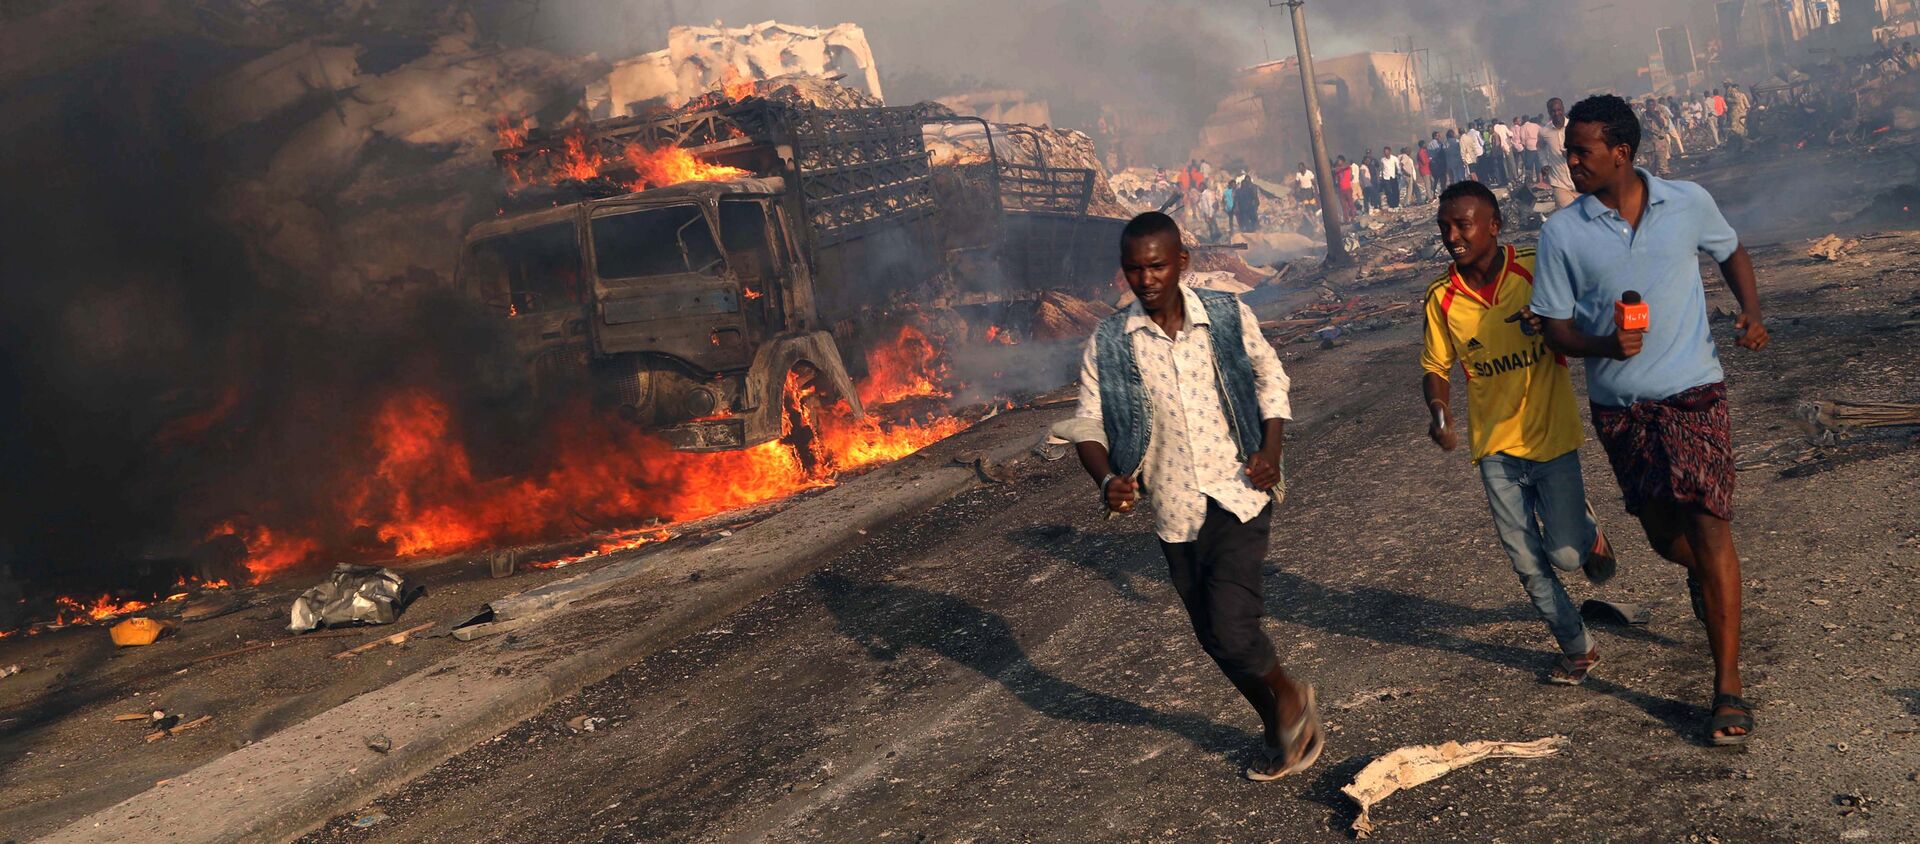 Люди бегут от места взрыва на улице КМ4 в Могадишо, Сомали - Sputnik Грузия, 1920, 15.06.2019